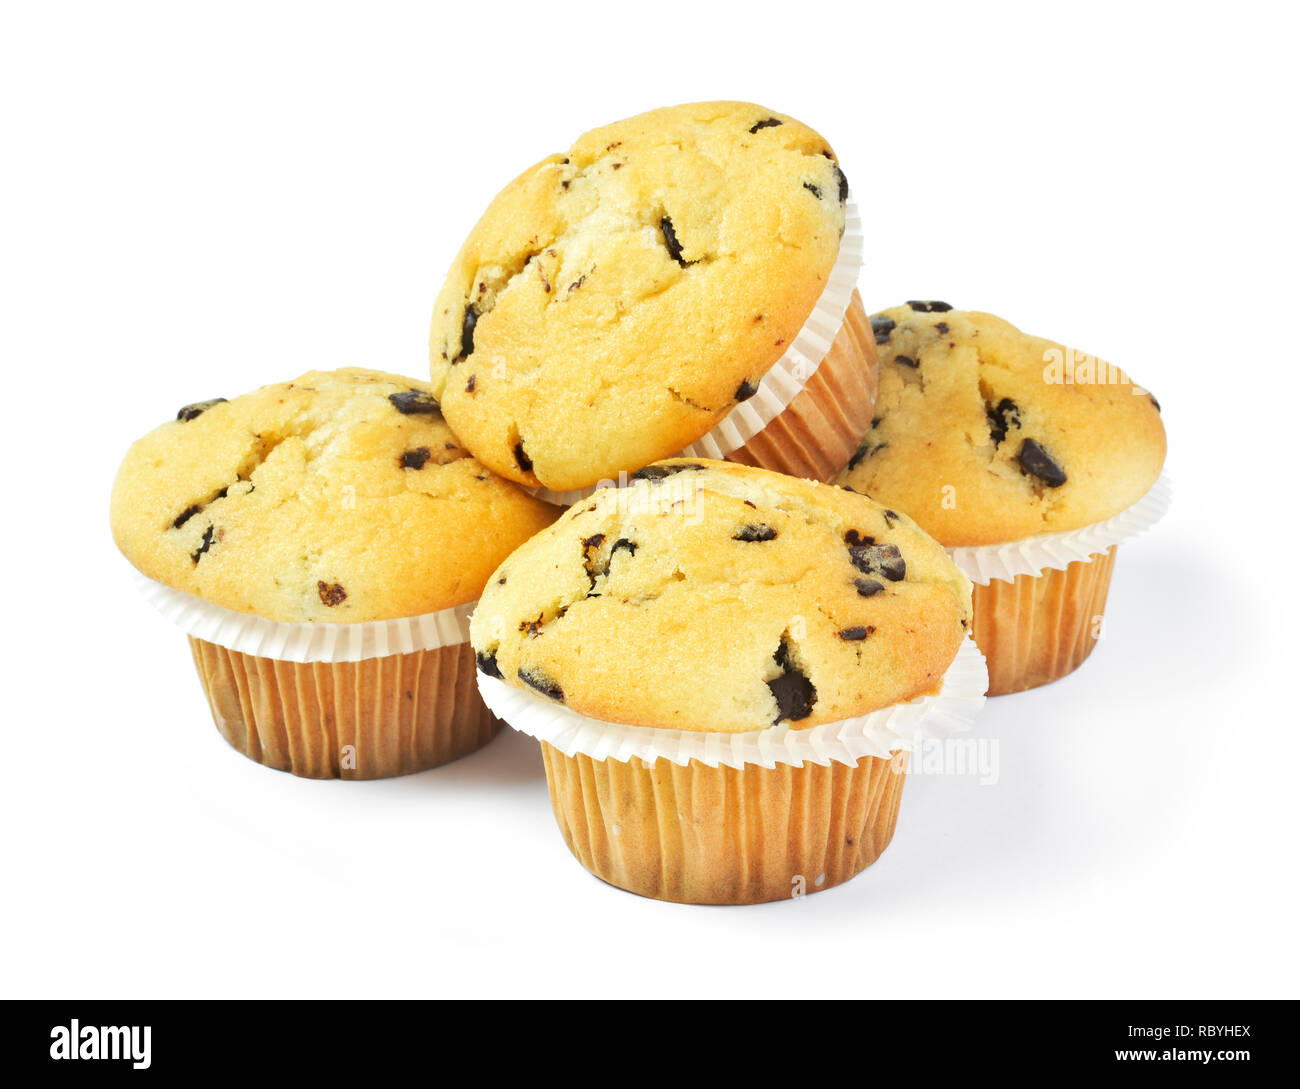 Deliziosi muffin alla vaniglia con cioccolato, isolati su sfondo bianco. Muffin con carta, cibo dolce o non integri in tema di mangiare. Foto Stock